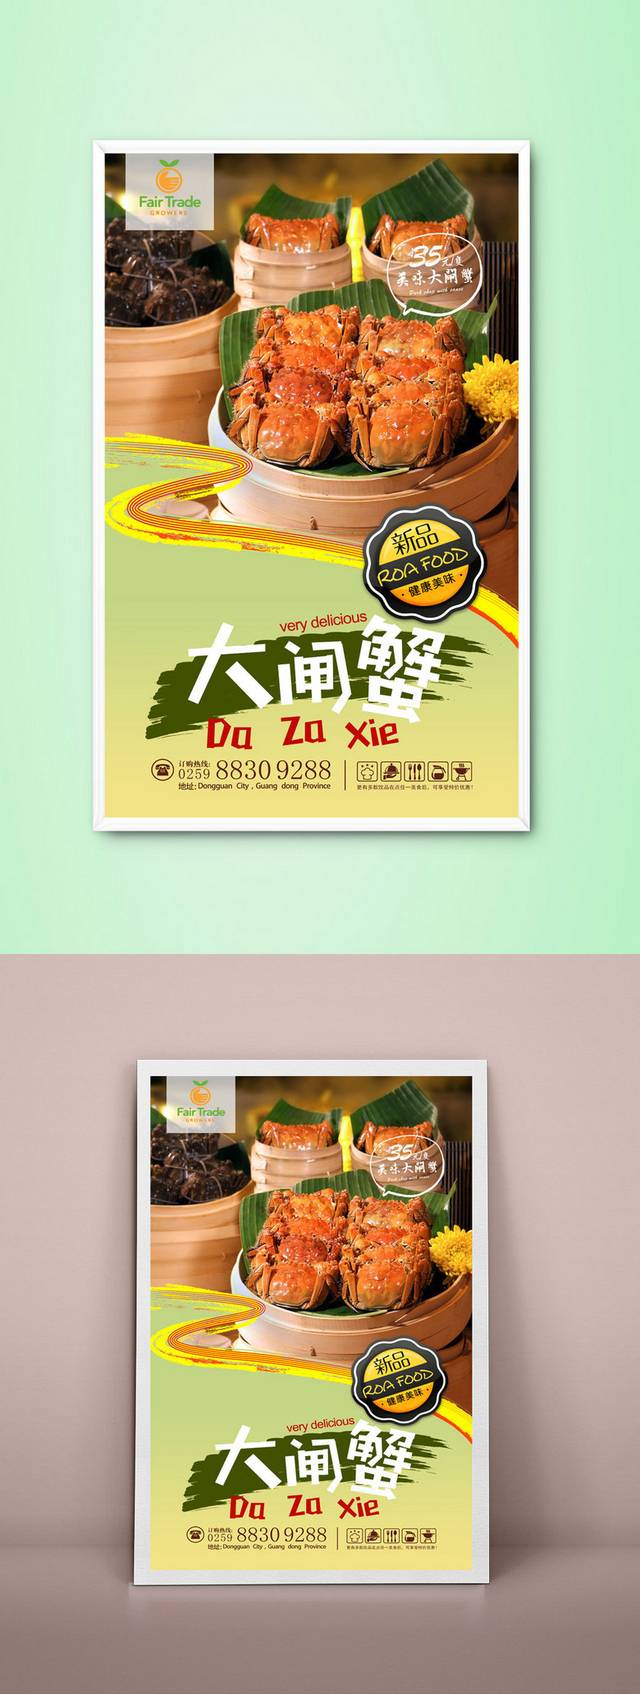 高清鄱阳湖大闸蟹餐饮宣传海报设计